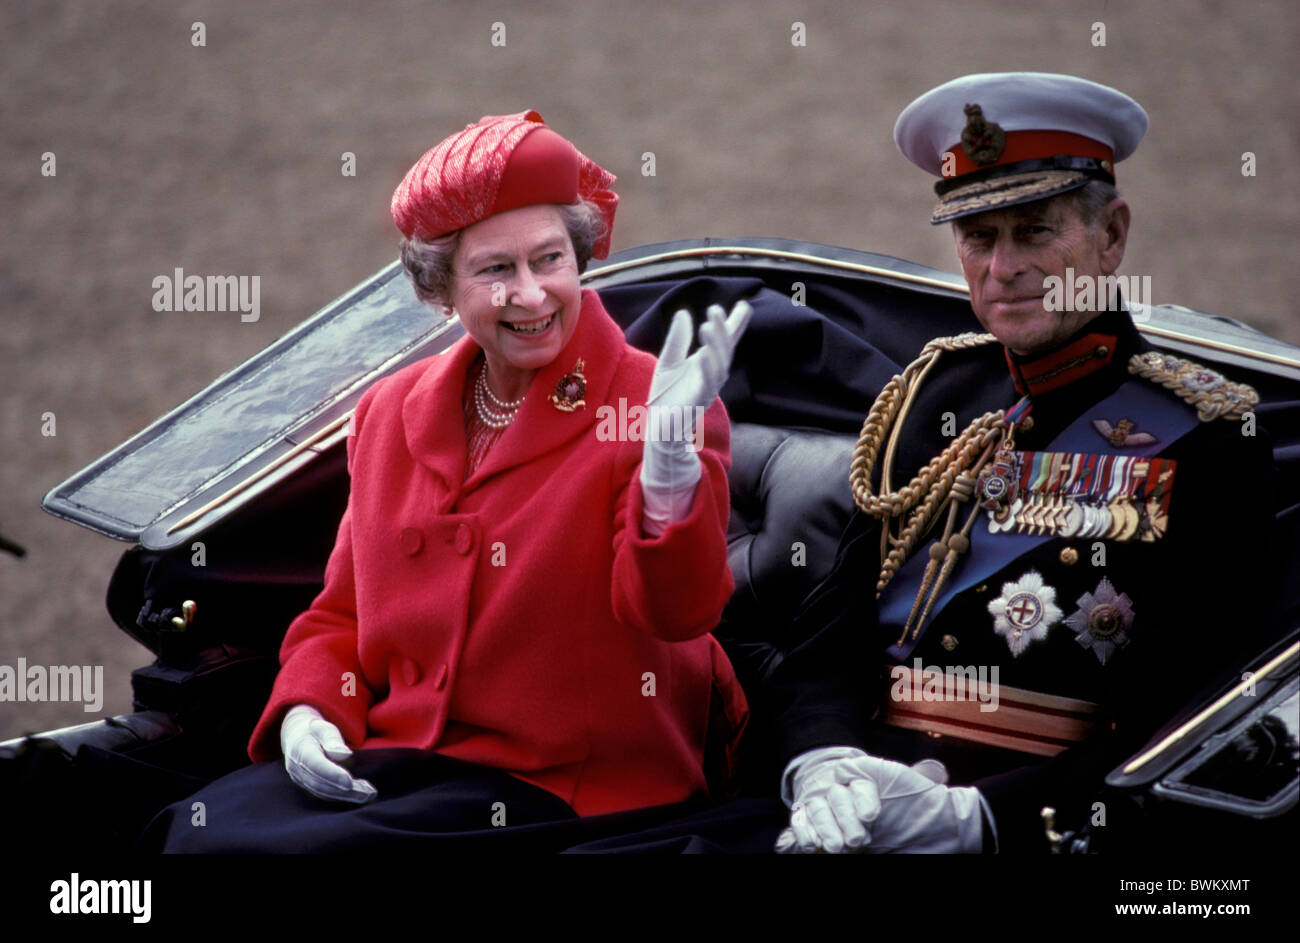 Regno Unito Londra Queen Elizabeth II Compleanno Parade Gran Bretagna Europa Inghilterra Prince Philip monarchia carrello Foto Stock